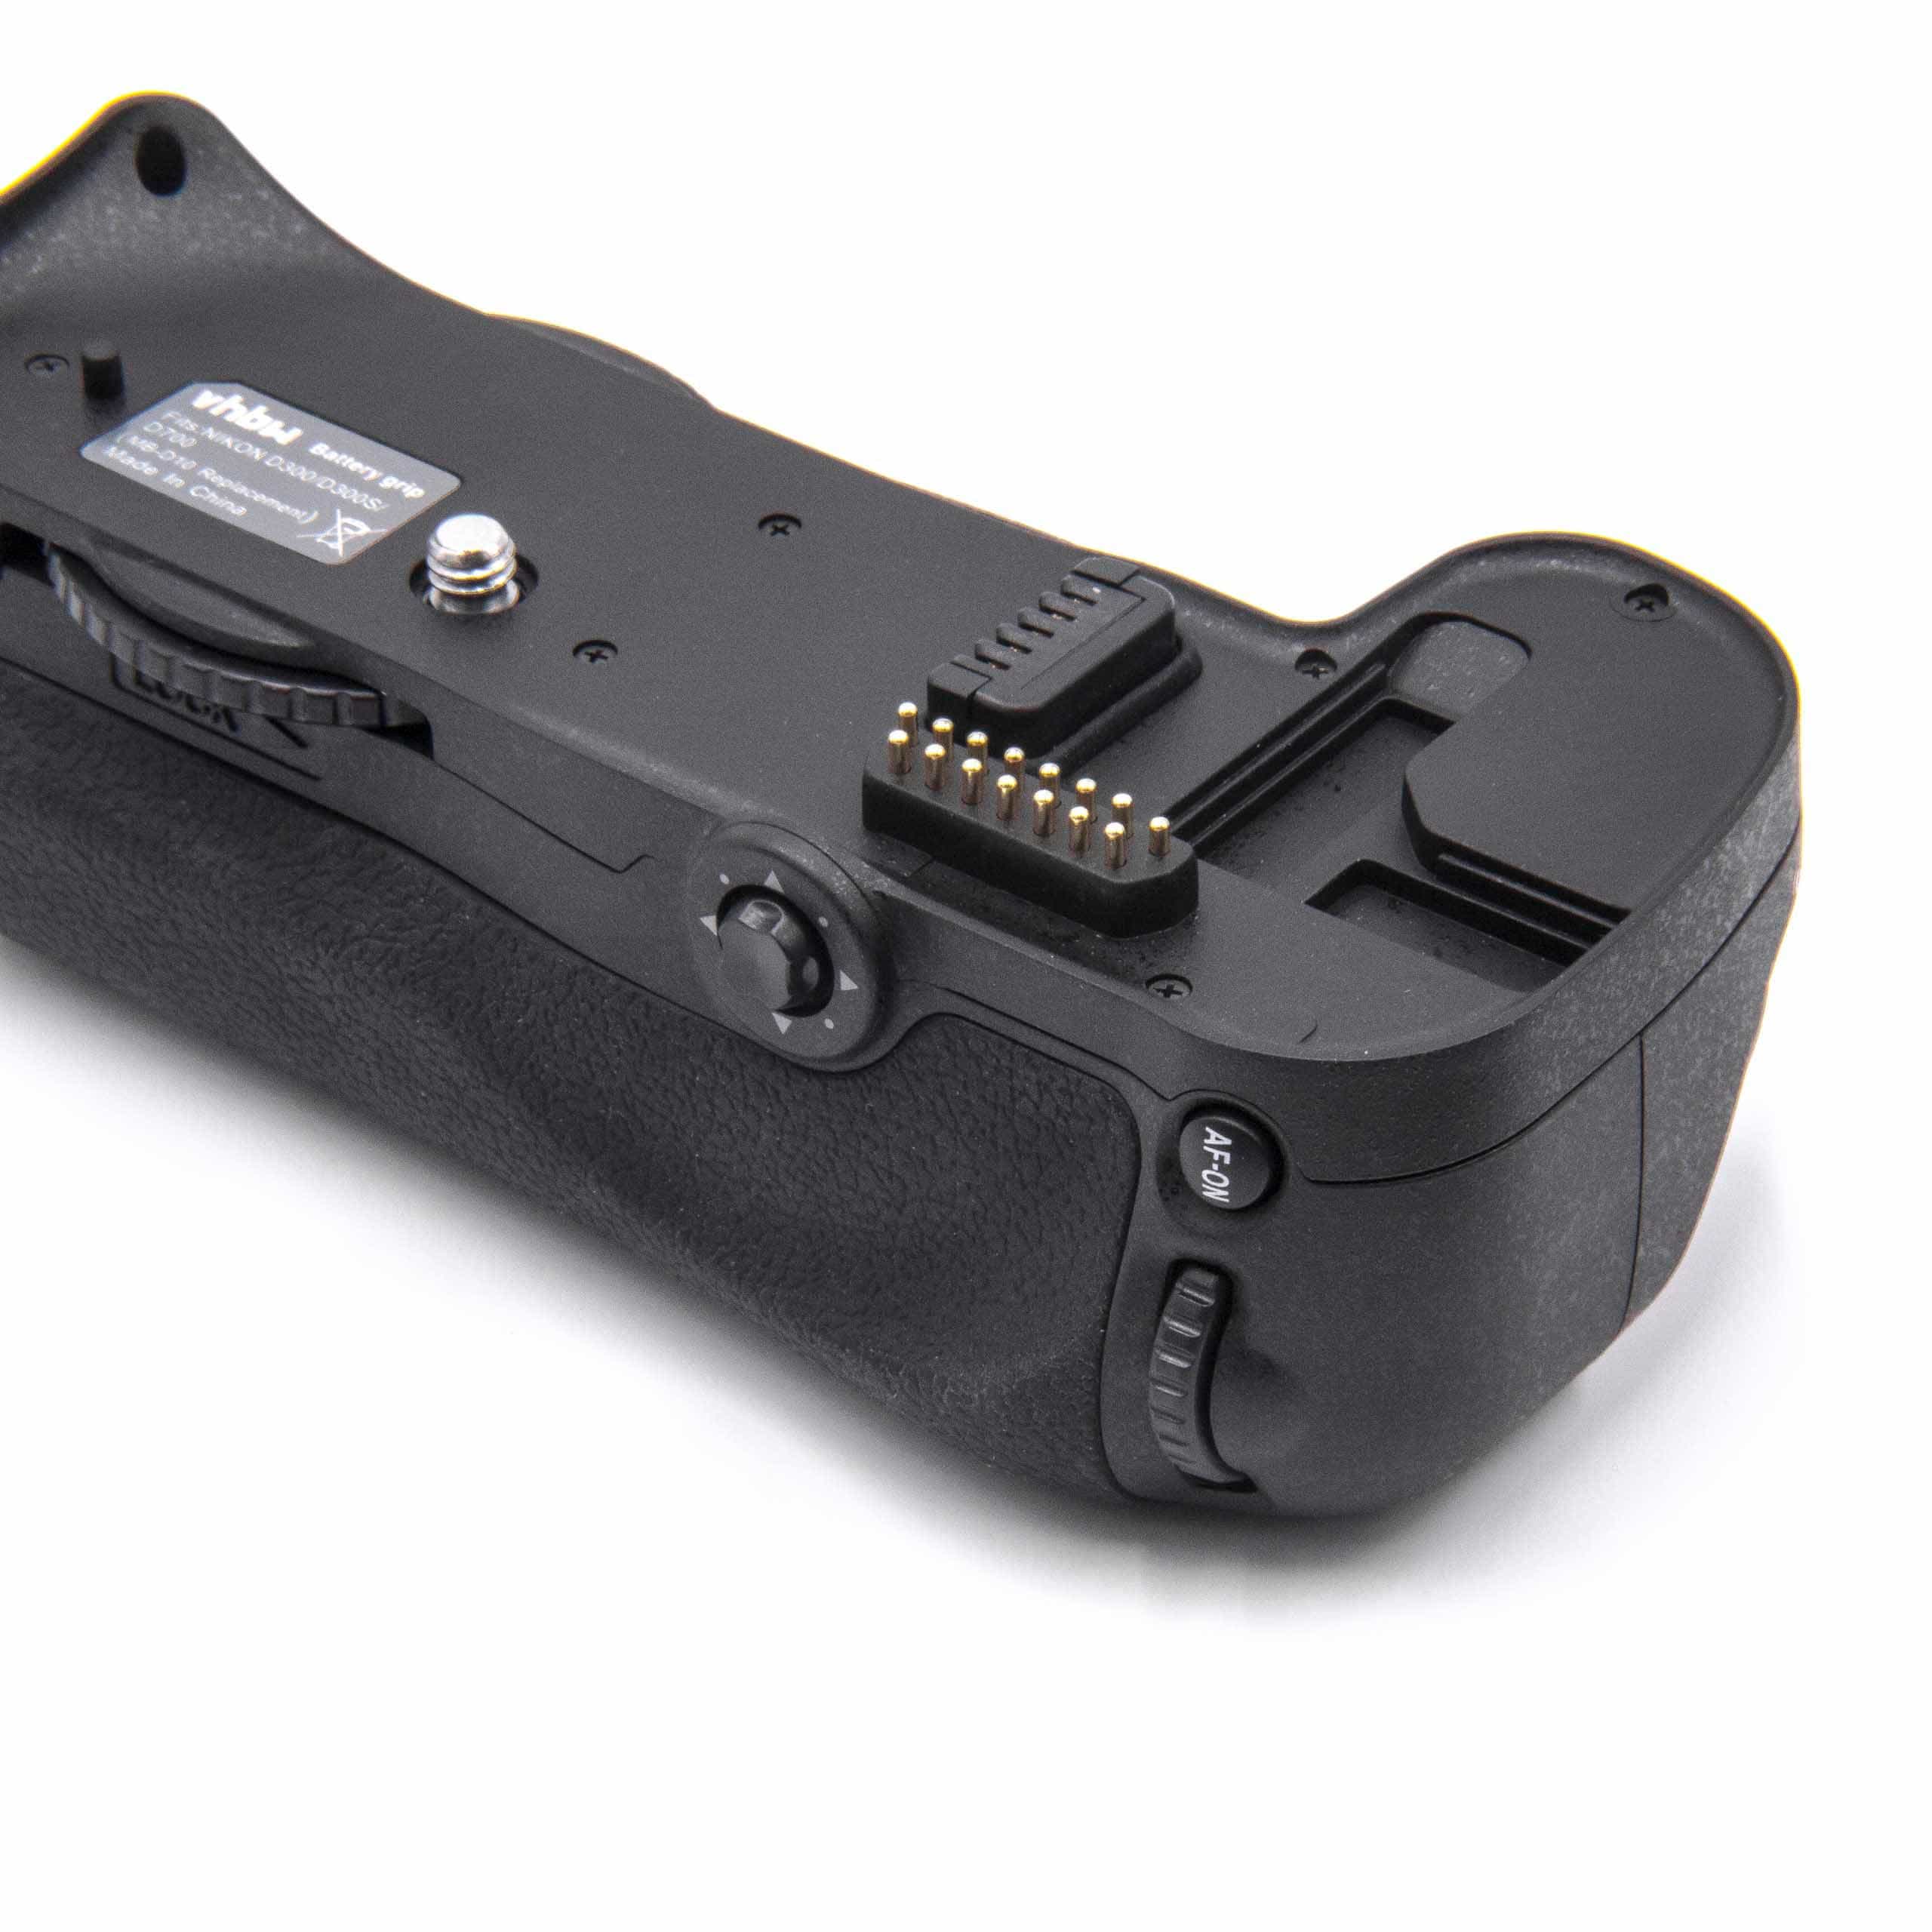 Uchwyt baterii grip do aparatu Nikon zamiennik Nikon MB-D10 - z kółkiem sterującym 